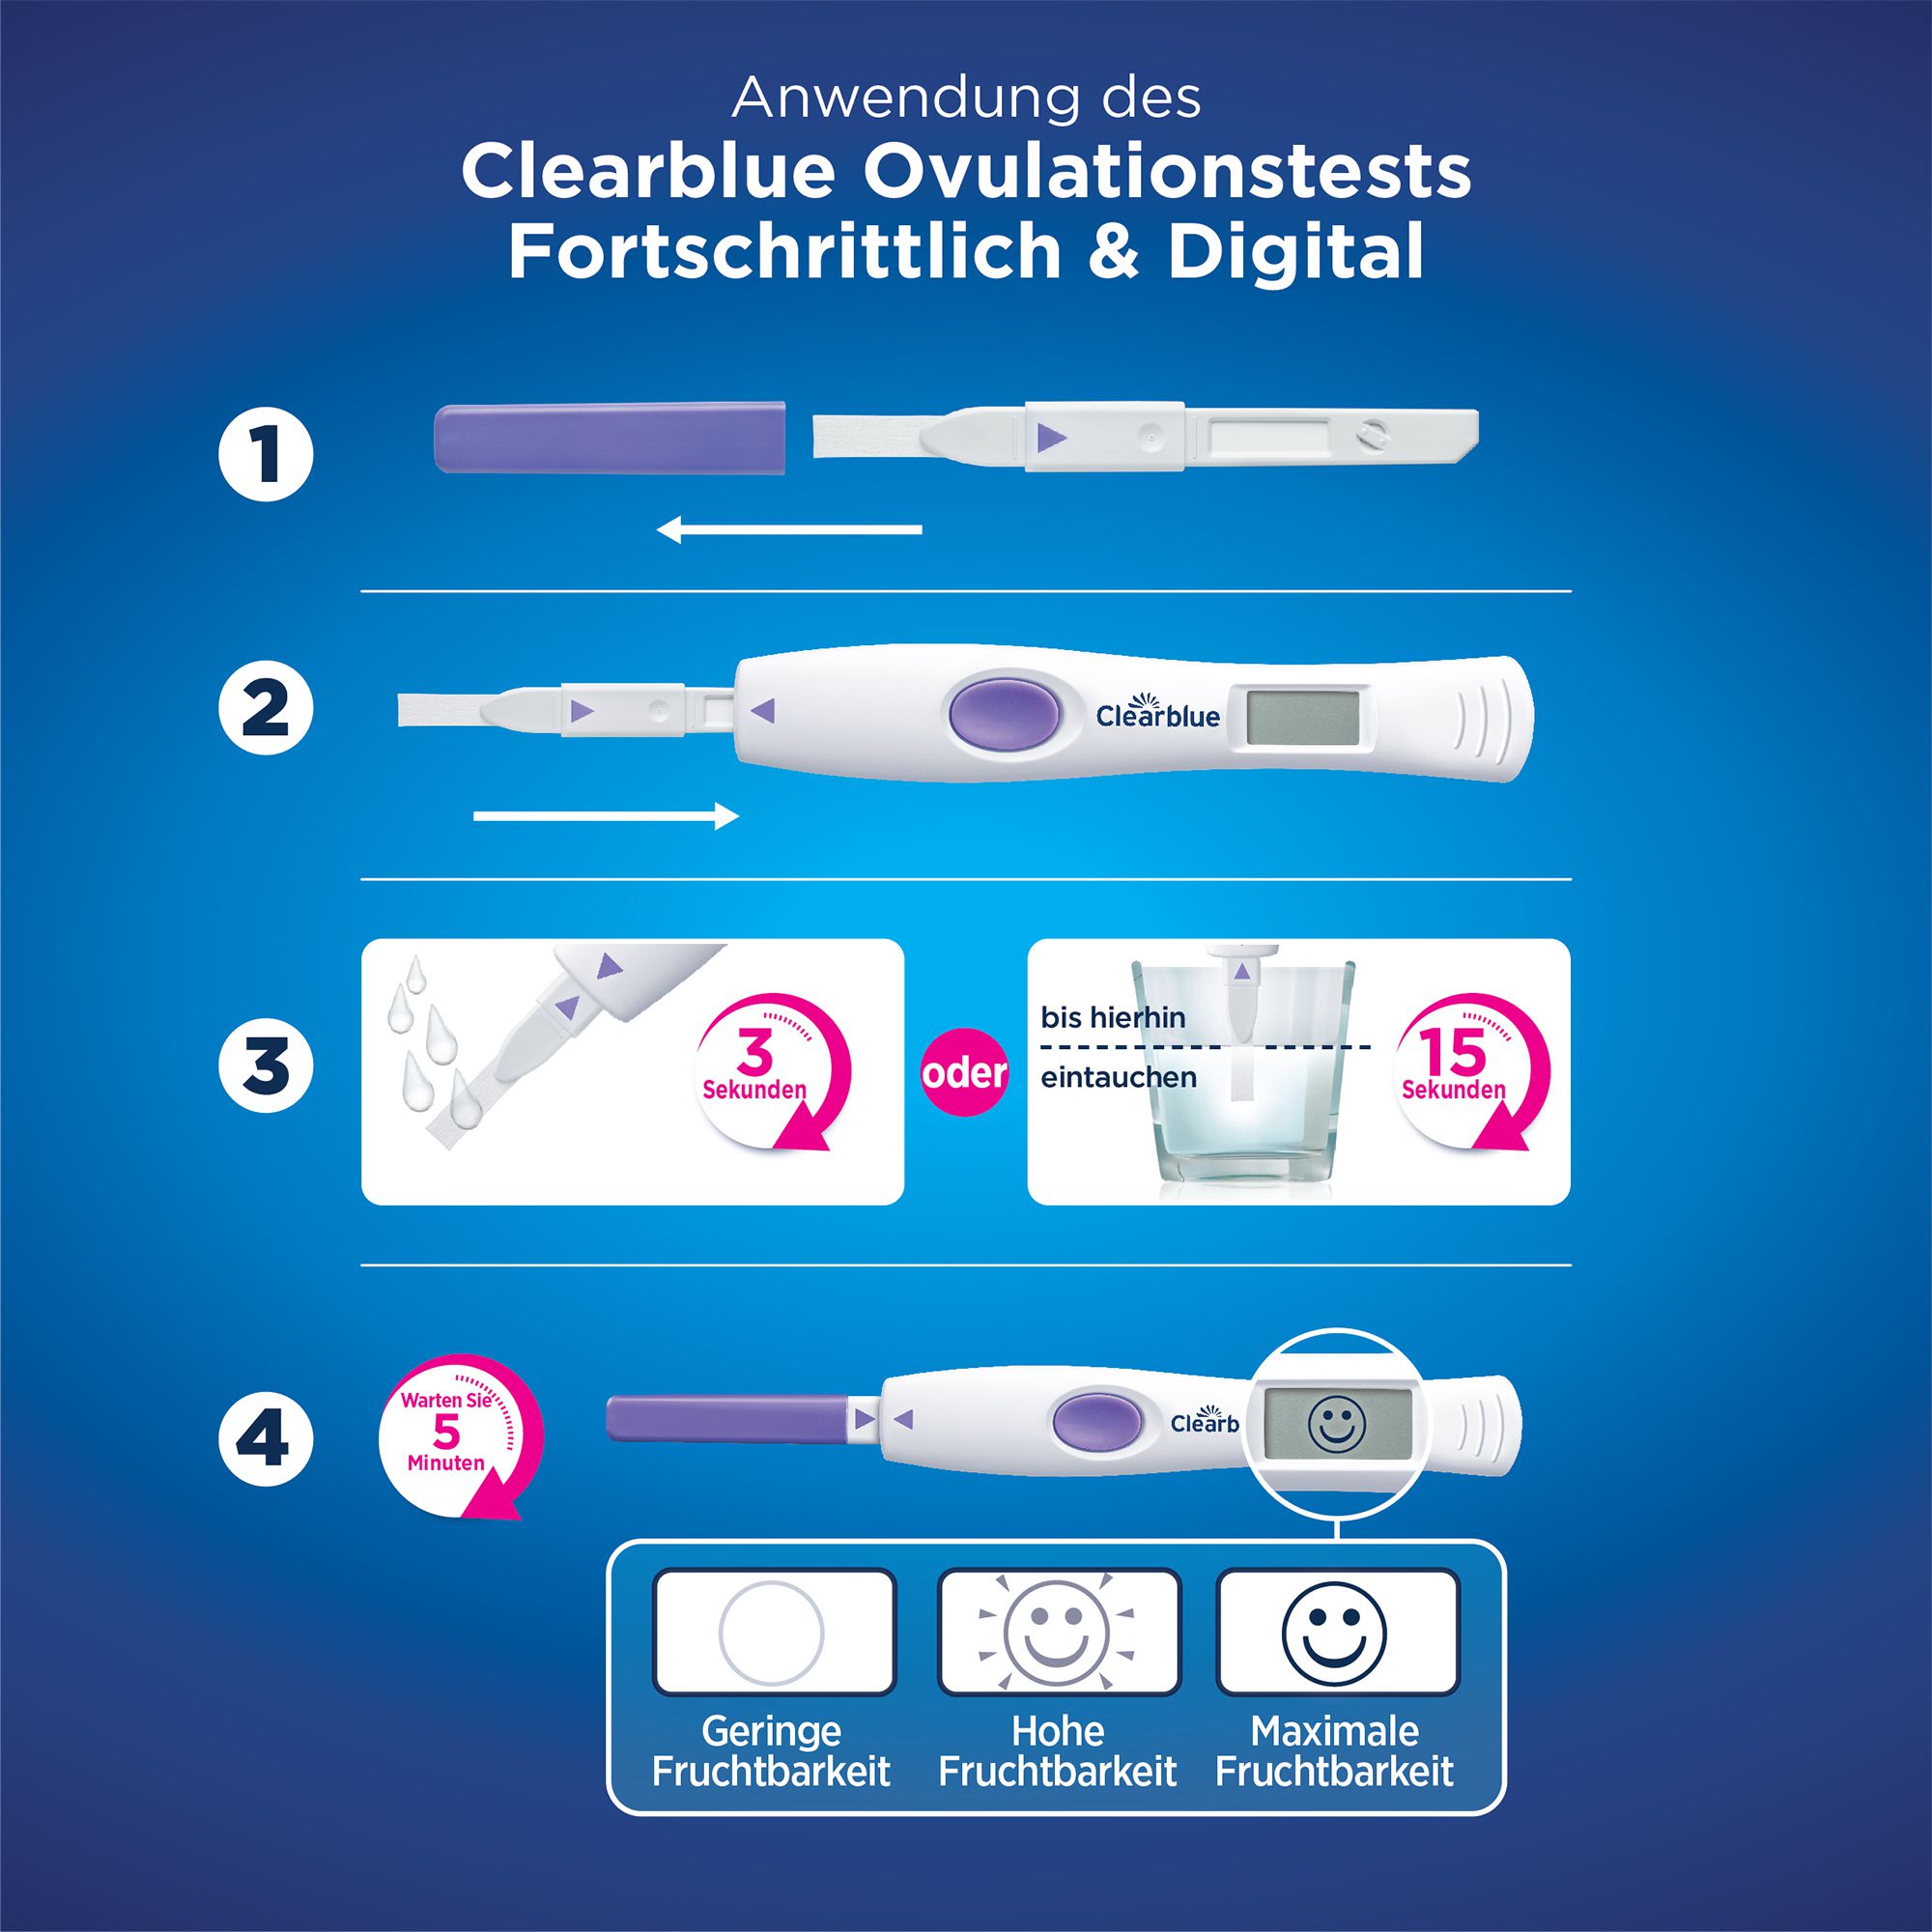 CLEARBLUE Ovulationstest fortschrittlich &amp; digital